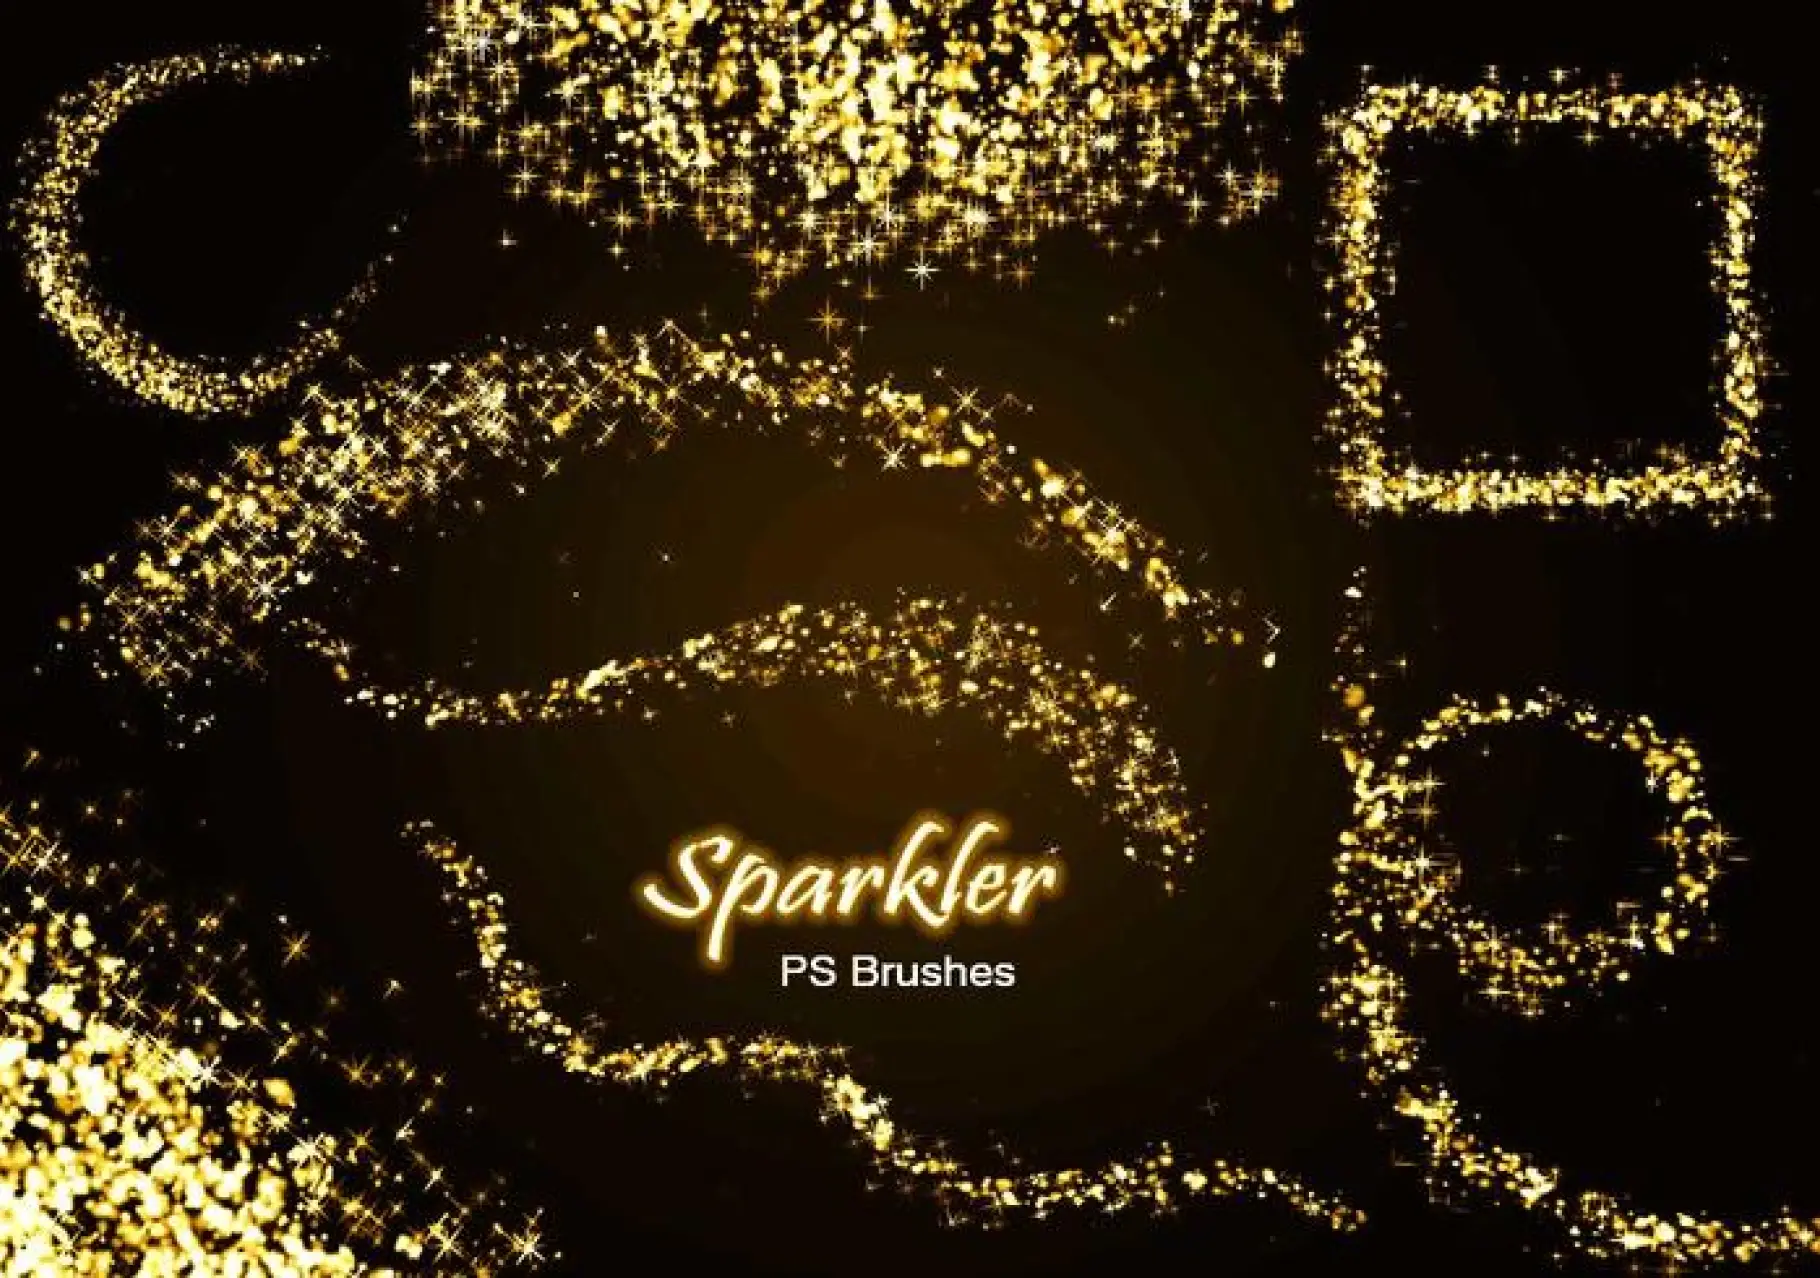 20 Sparkler PS Brushes ย่อ เล่มที่ 19 -